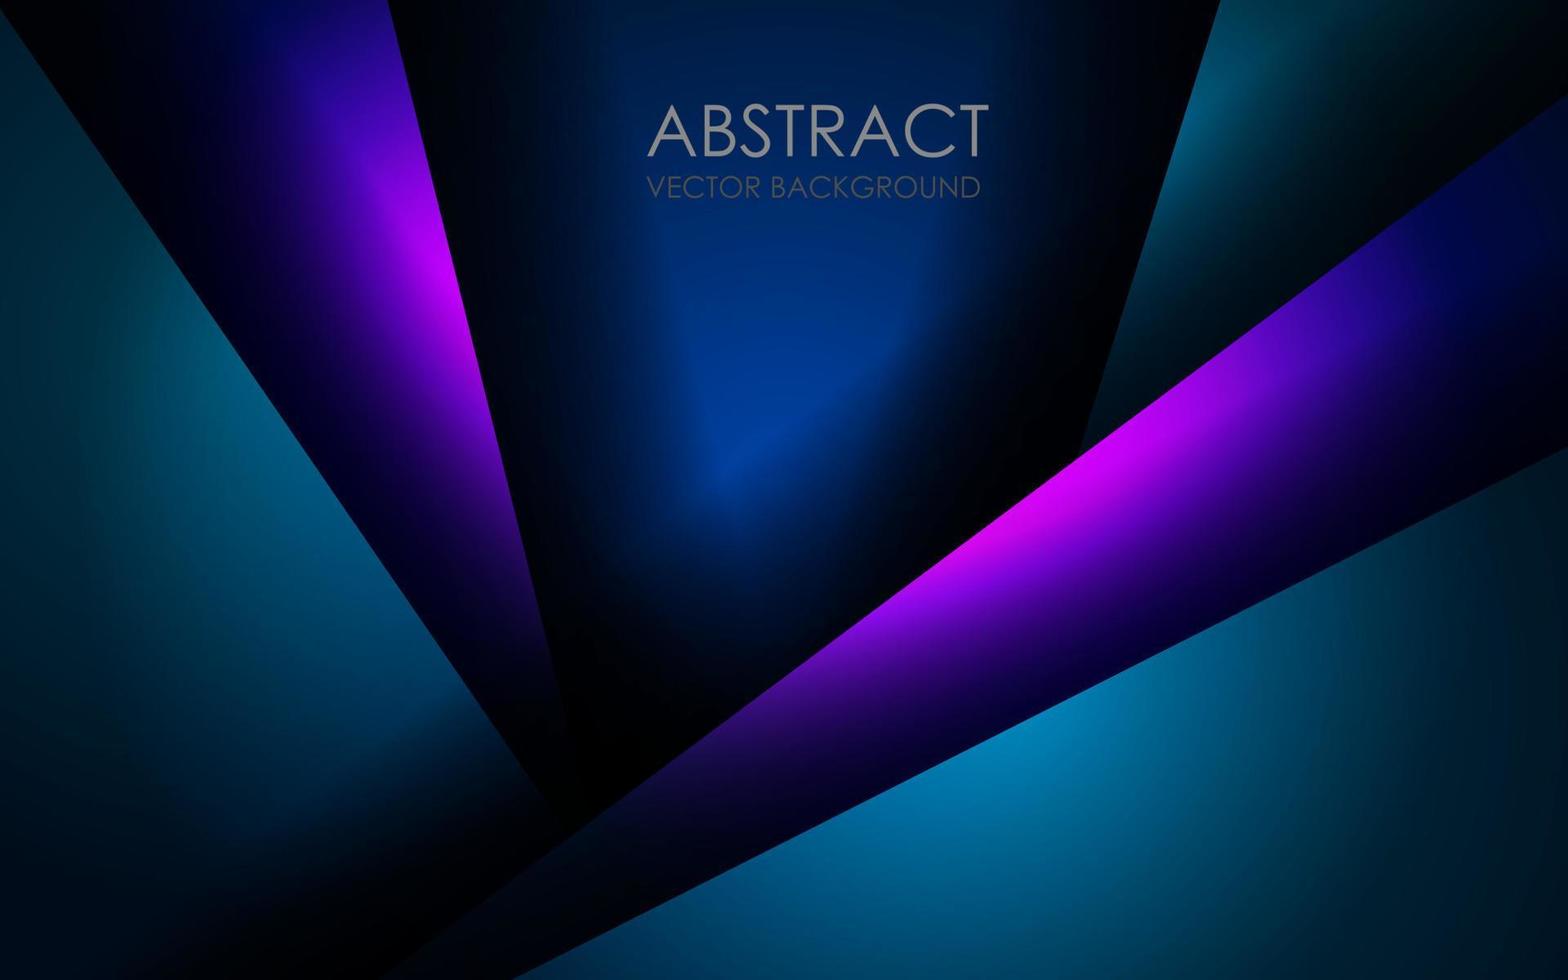 abstract groente, Purper, blauw overlappen Aan zwart blanco ruimte met tekst ontwerp modern luxe futuristische technologie achtergrond vector illustratie.